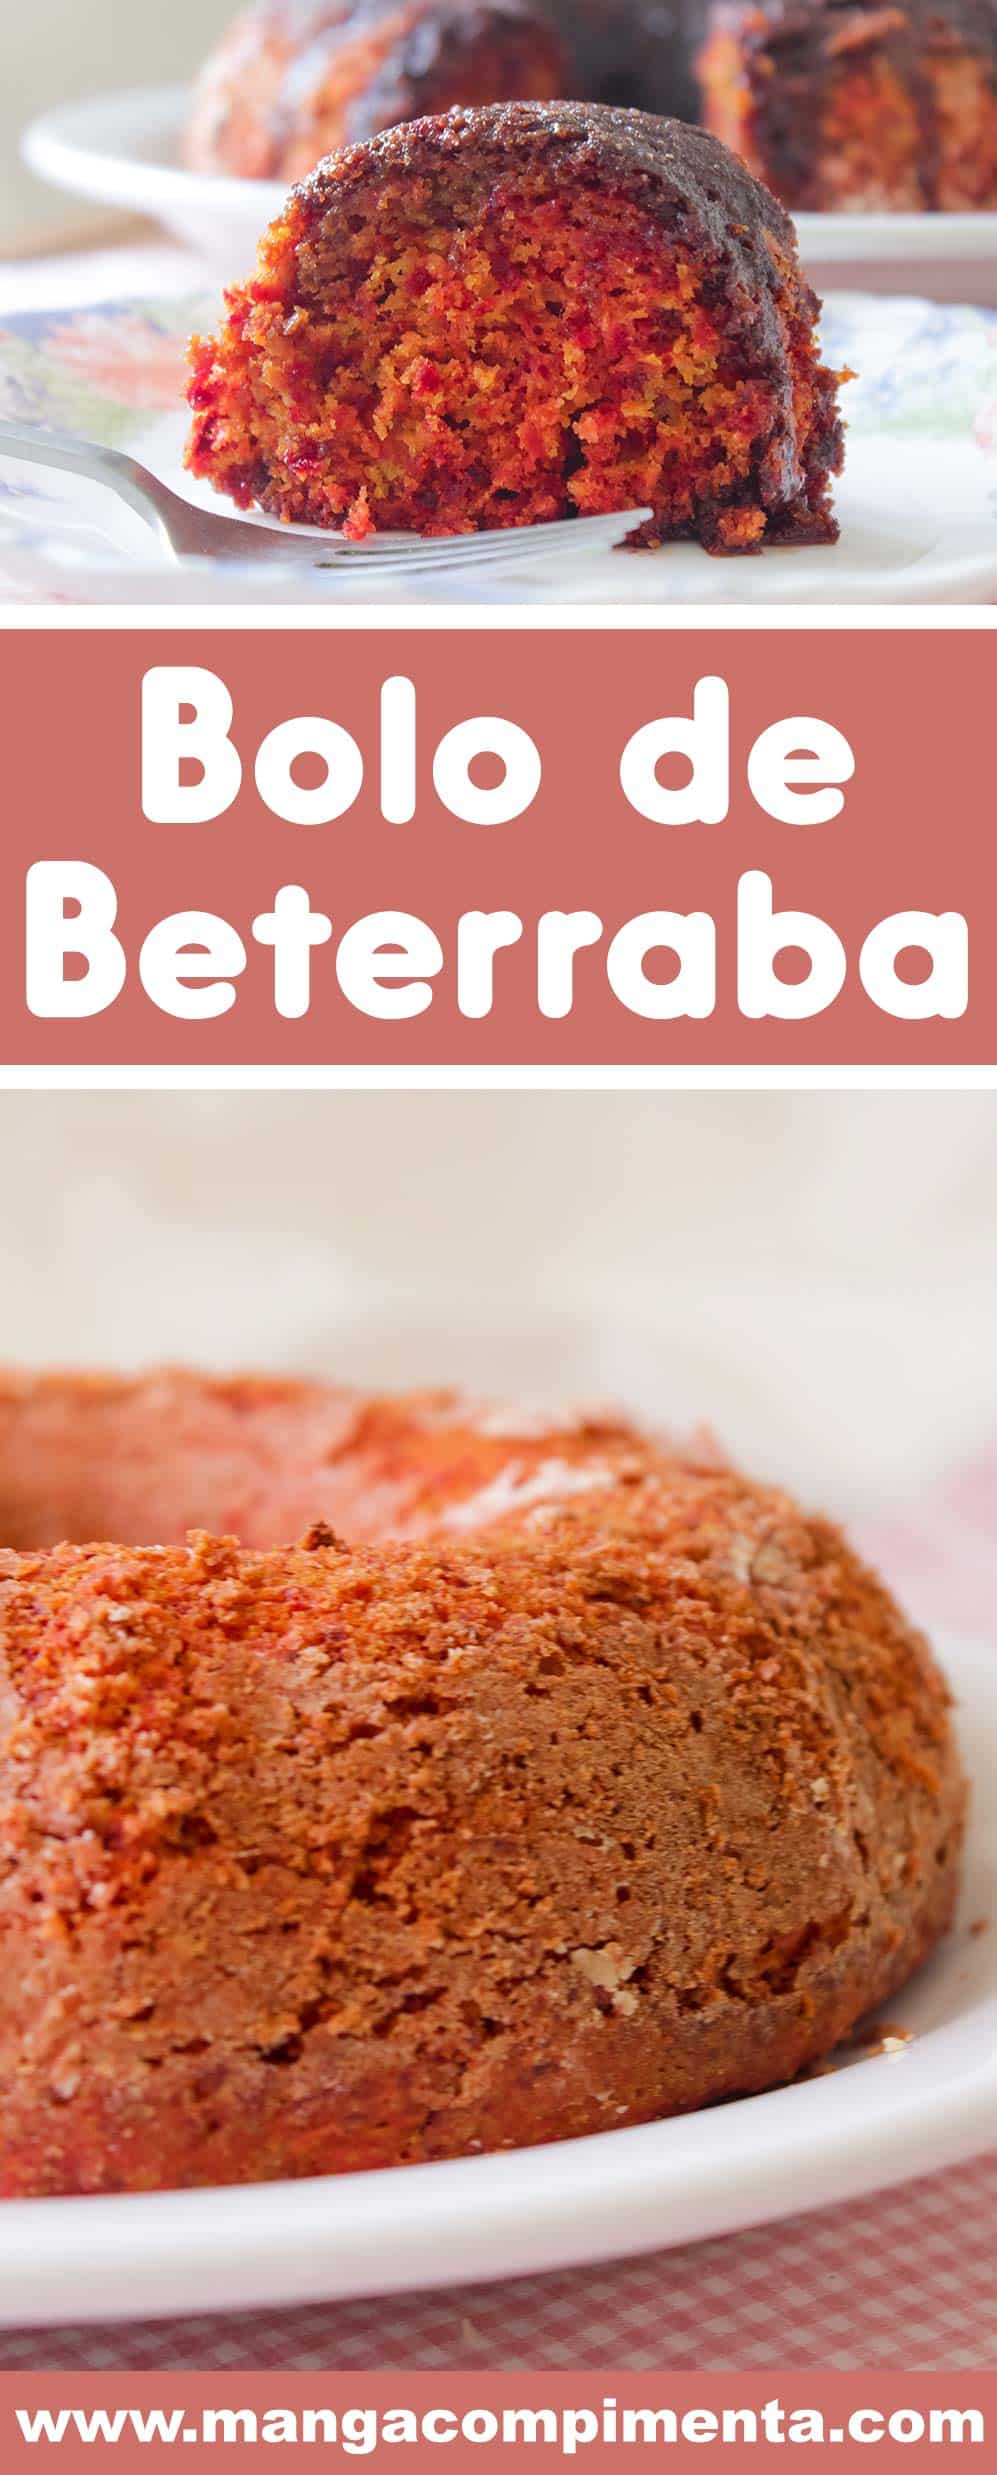 Receita de Bolo de Beterraba - prepare para o café da manhã ou da tarde!